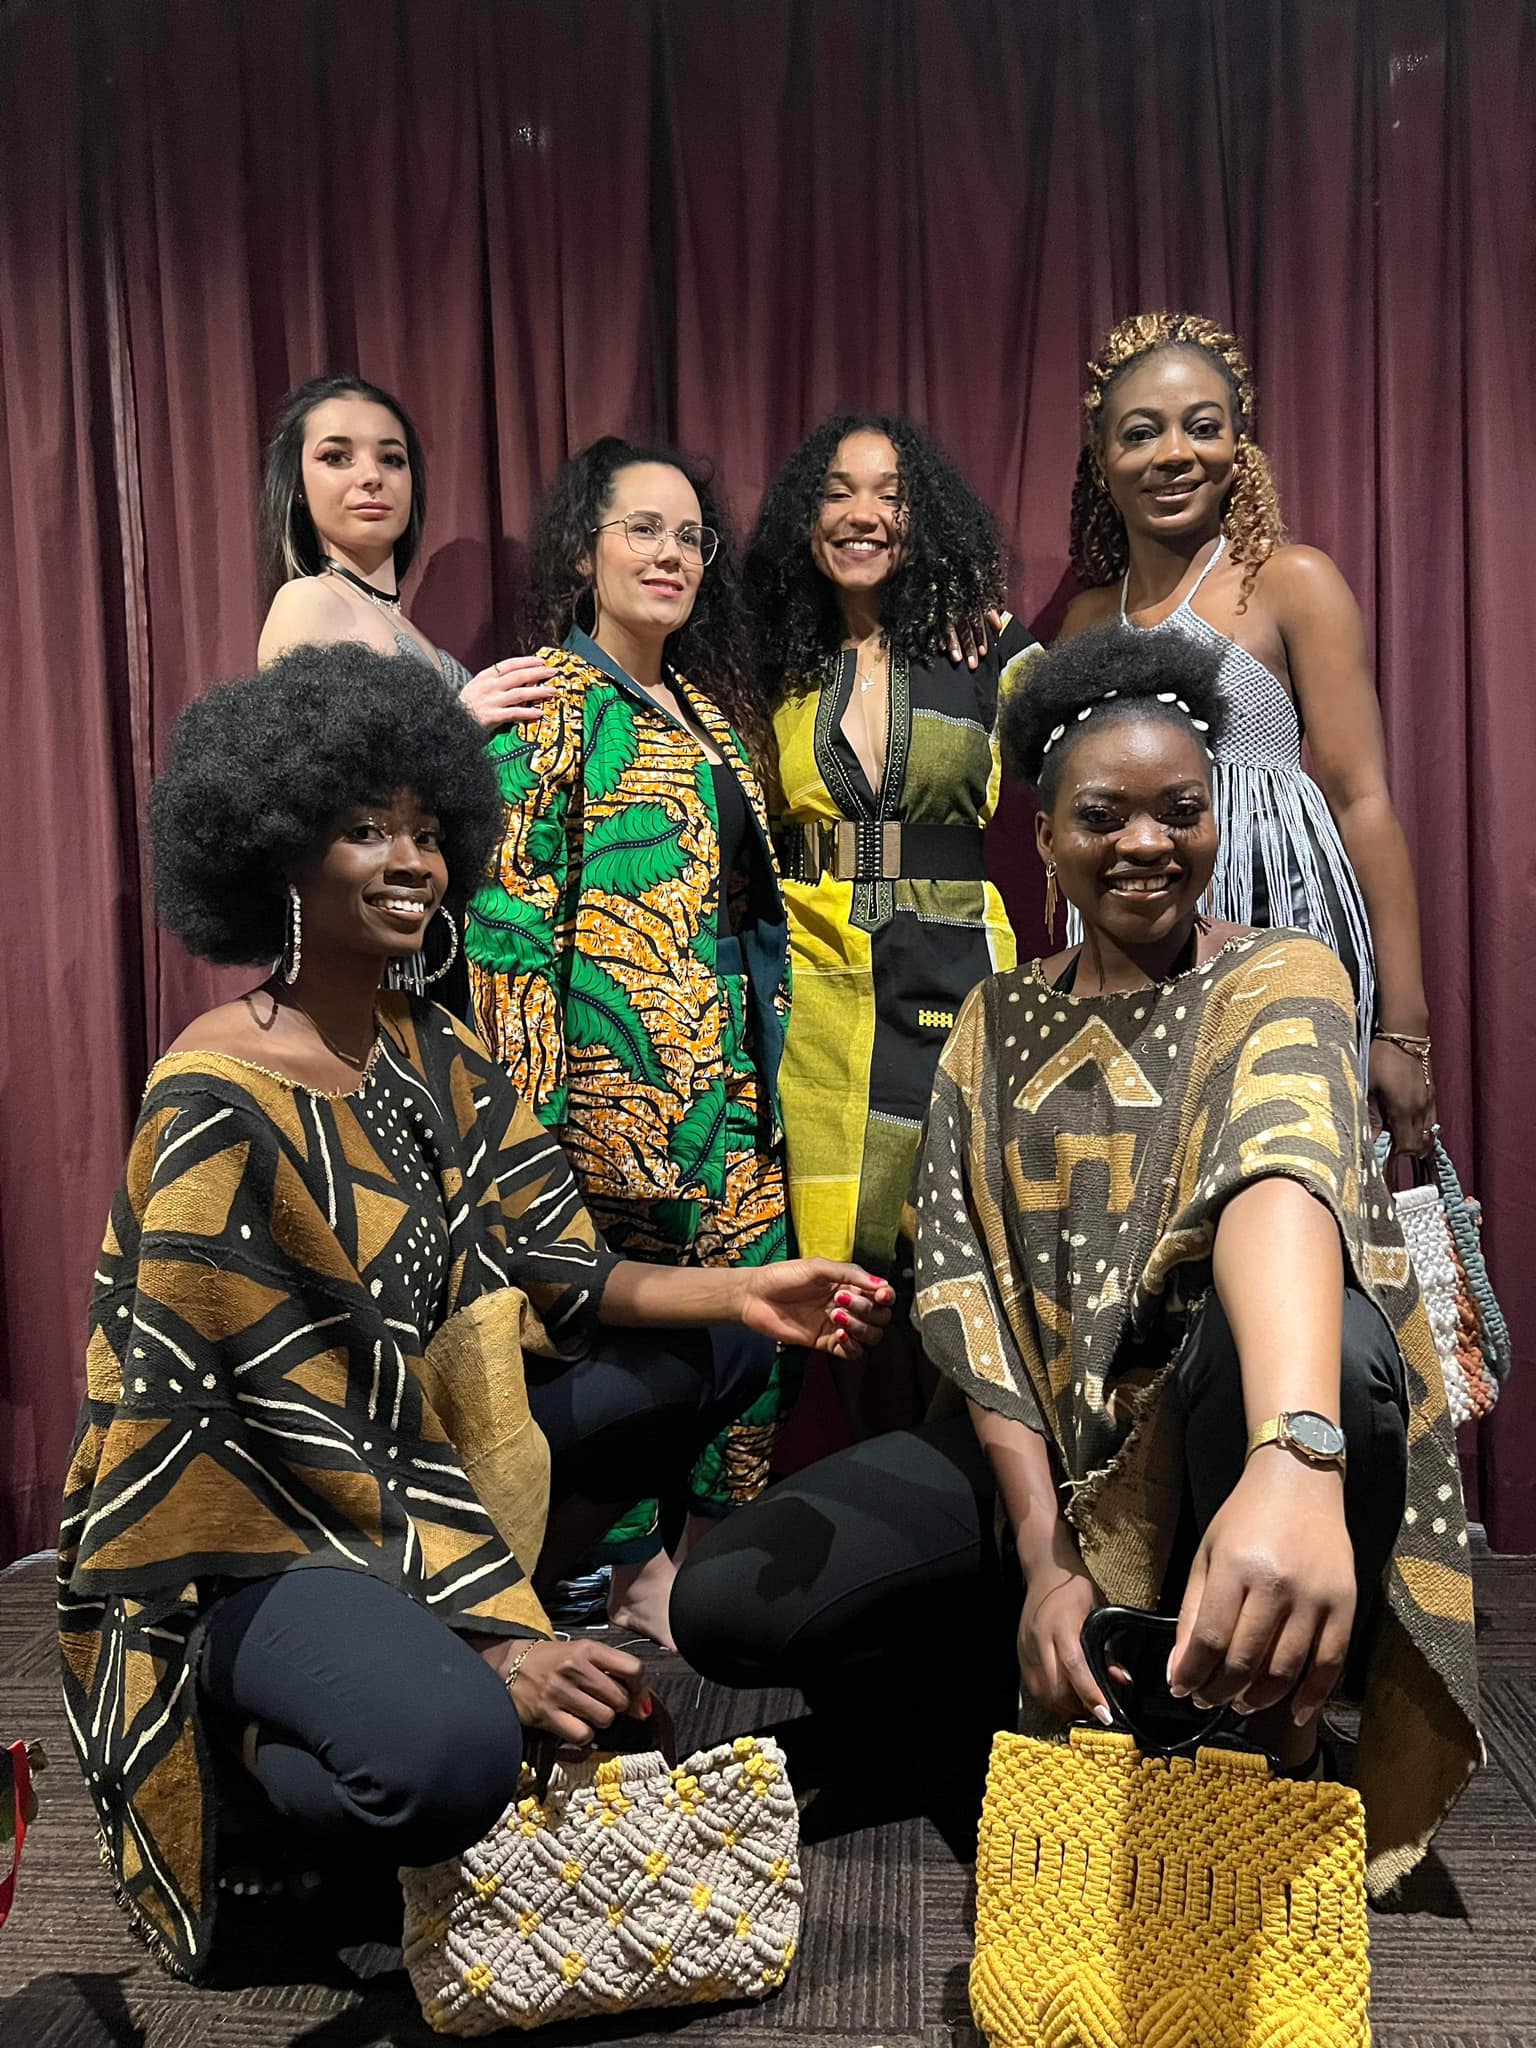 Six femmes prennent la pause. Parmi elles, deux sont caucasiennes et quatre sont afro-descendantes. Chacune d'entre elle porte des créations mode aux motifs et aux coupes d'inspiration africaine. 